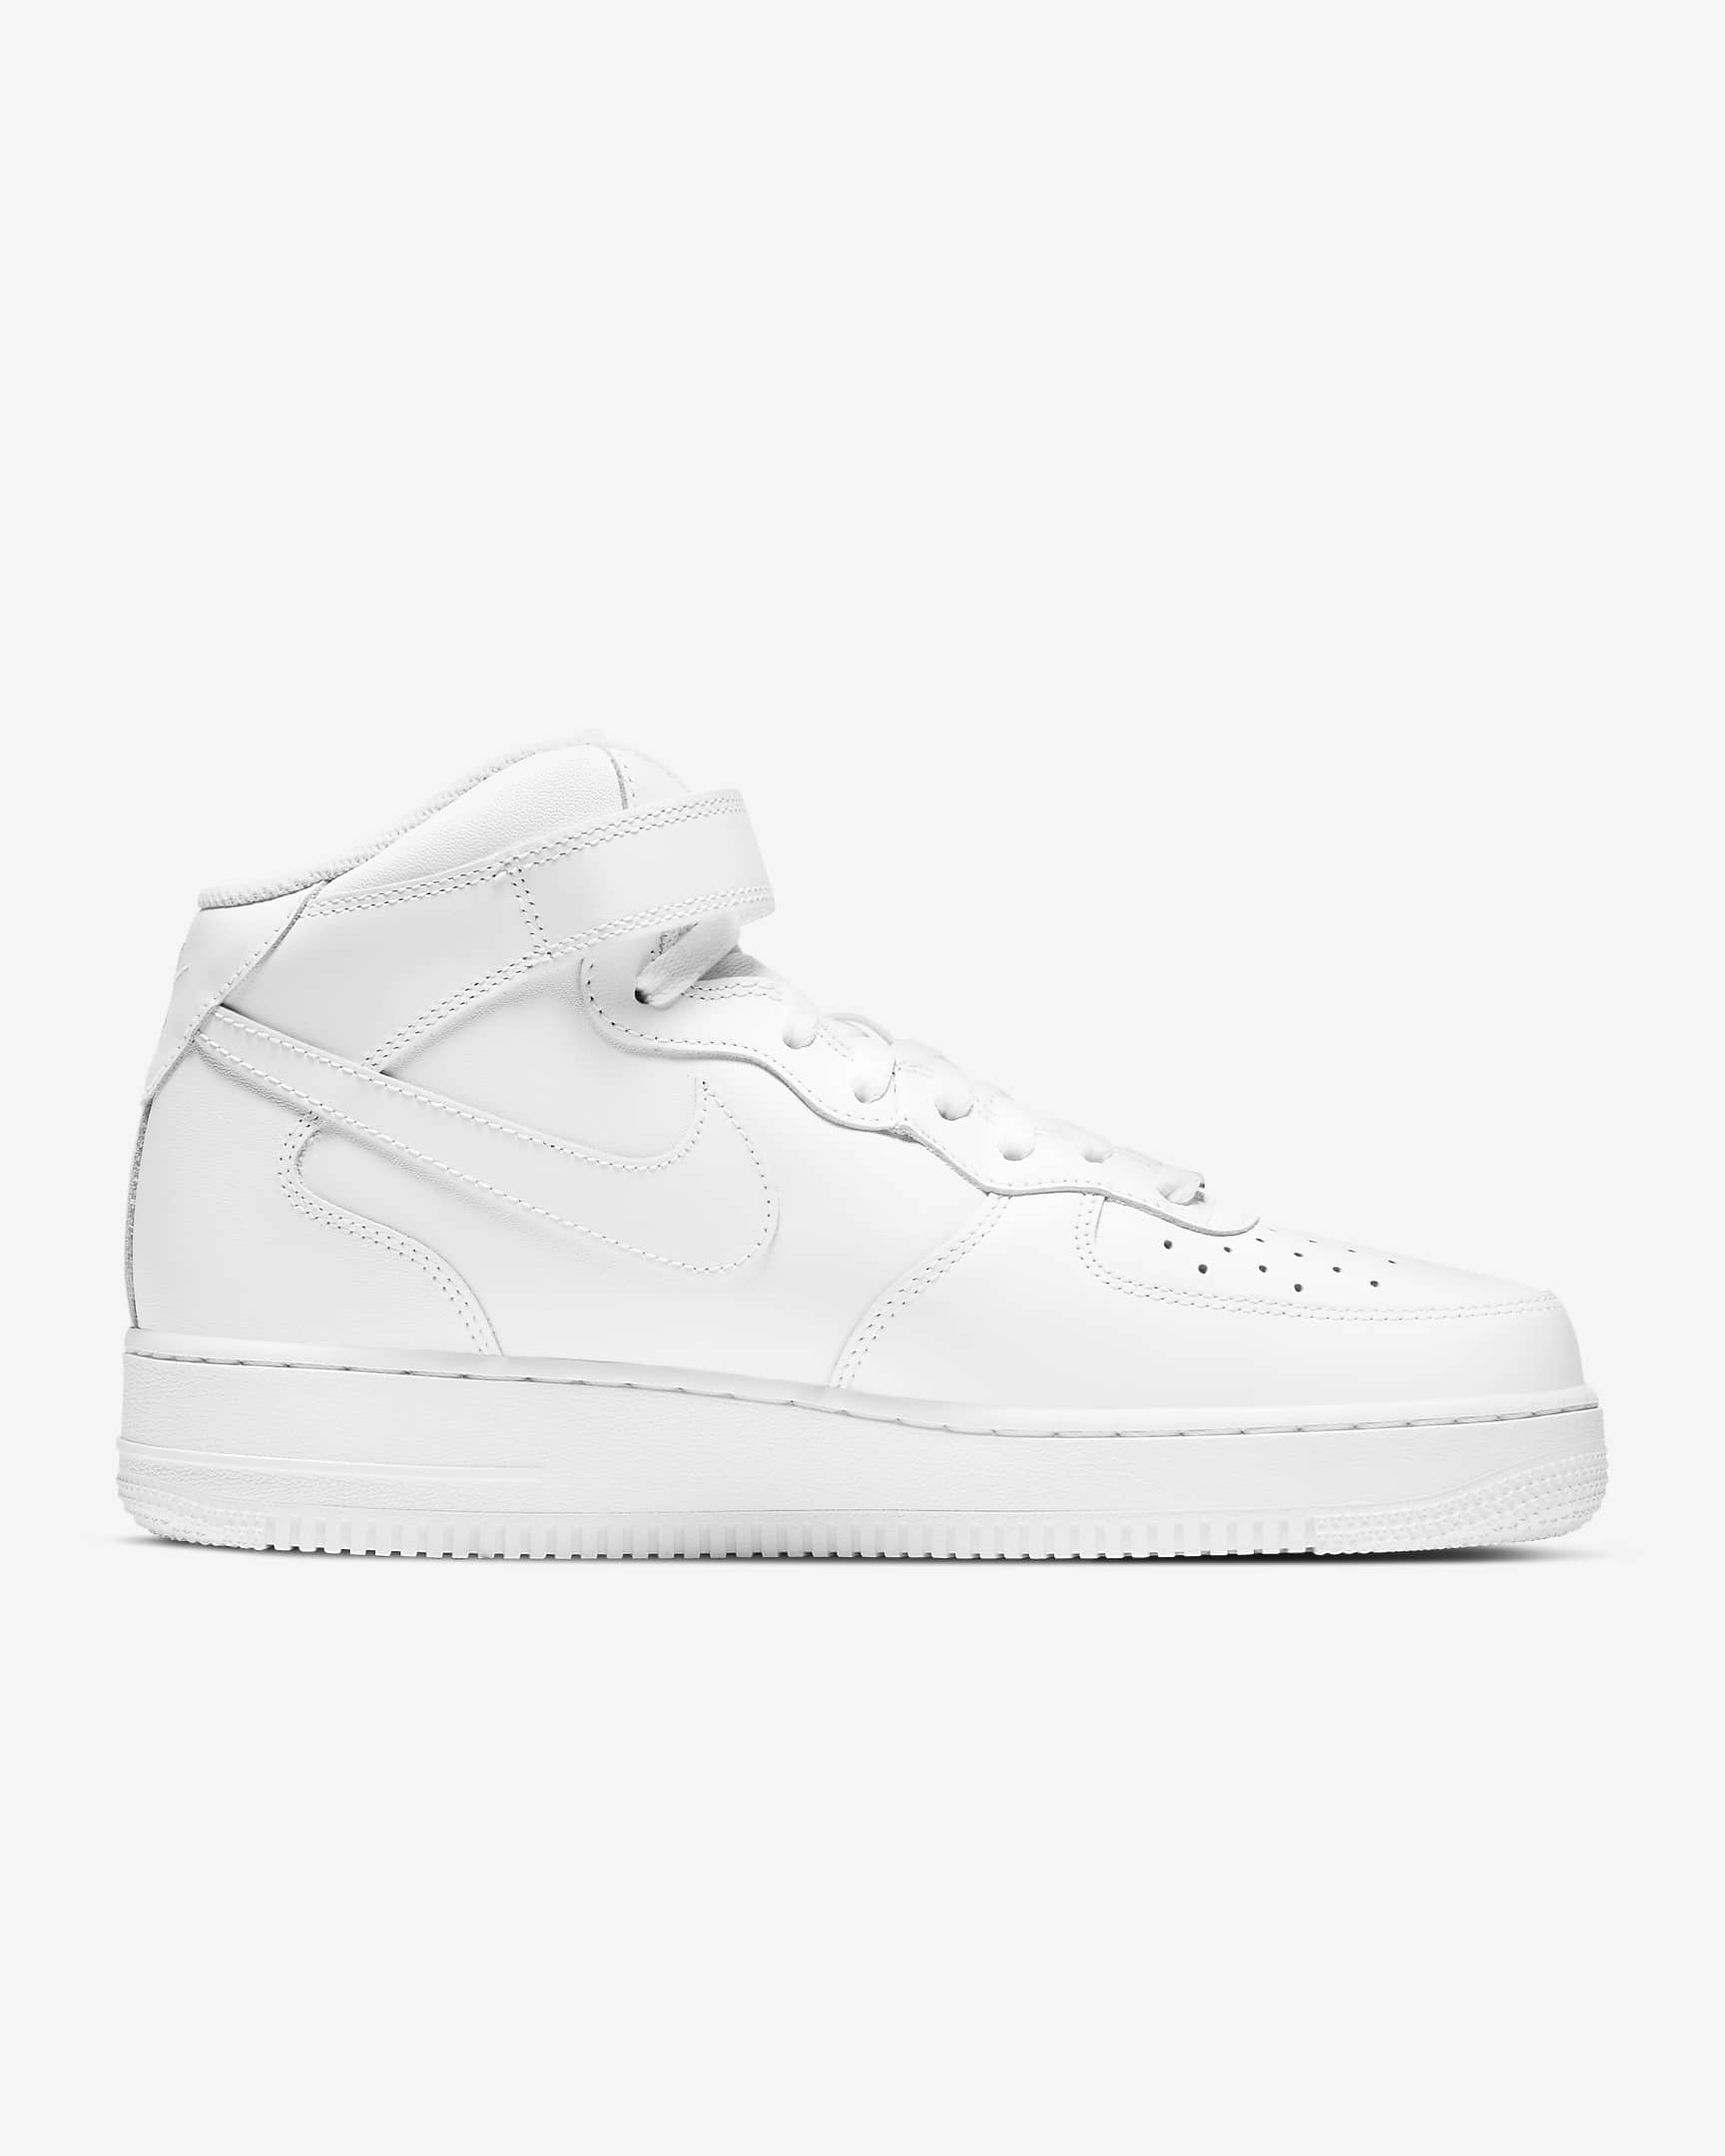 Nike Air Force 1 中筒 '07 男鞋 - 白色/白色